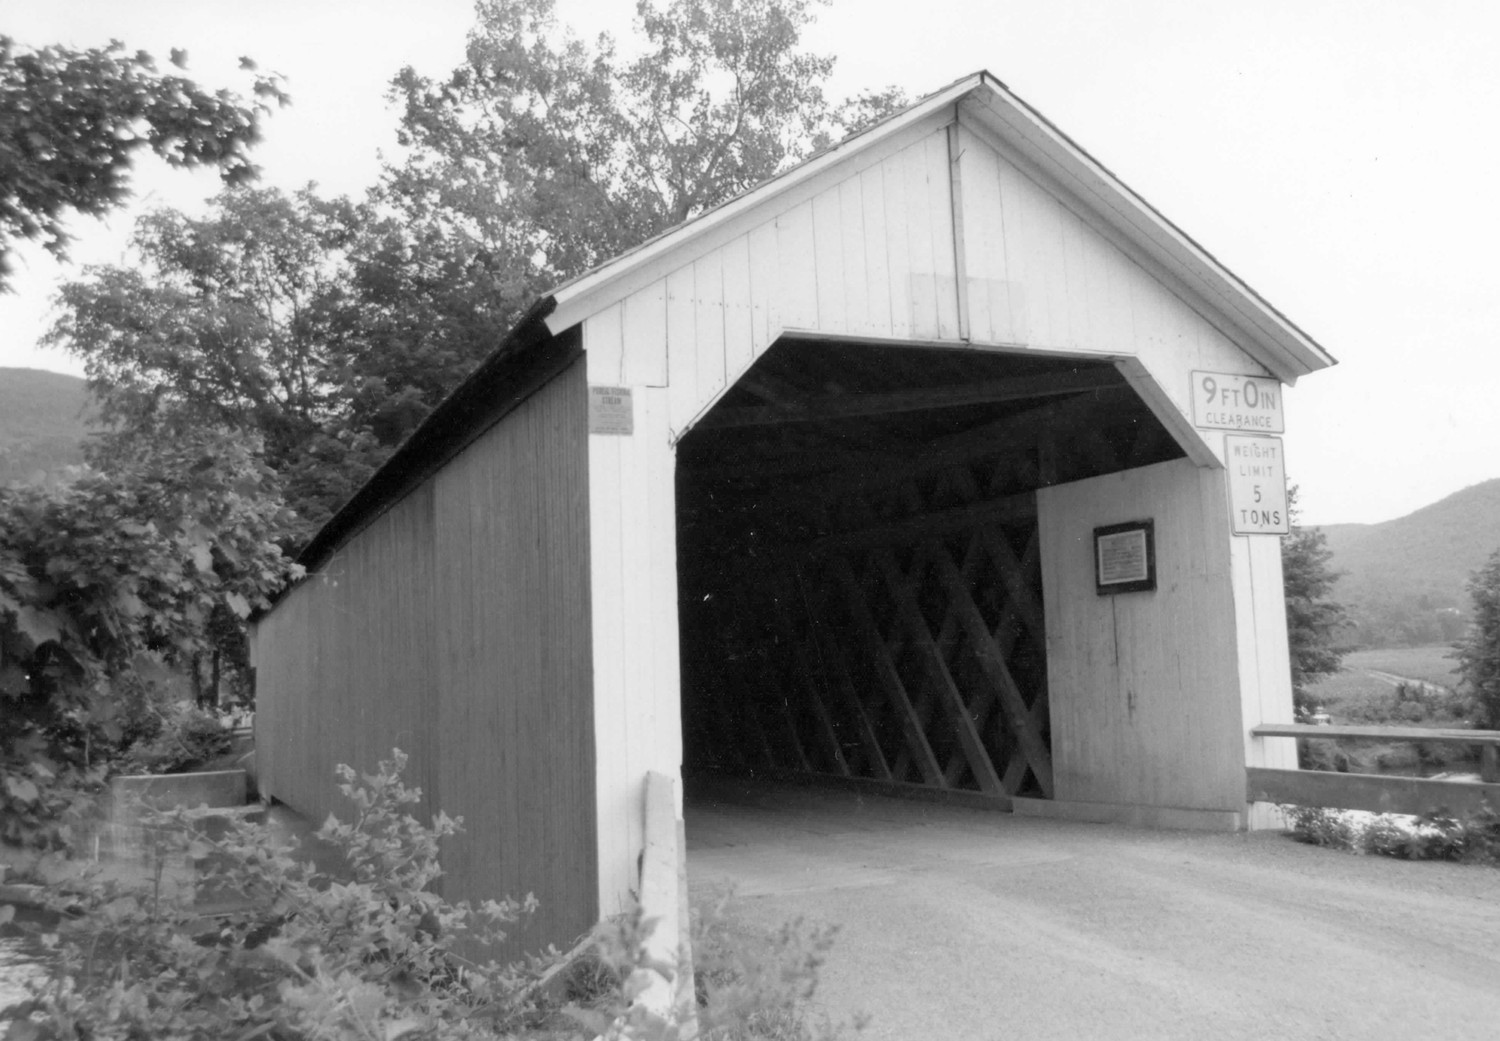 Eagleville Covered Bridge, Eagleville New York Looking west (1976)